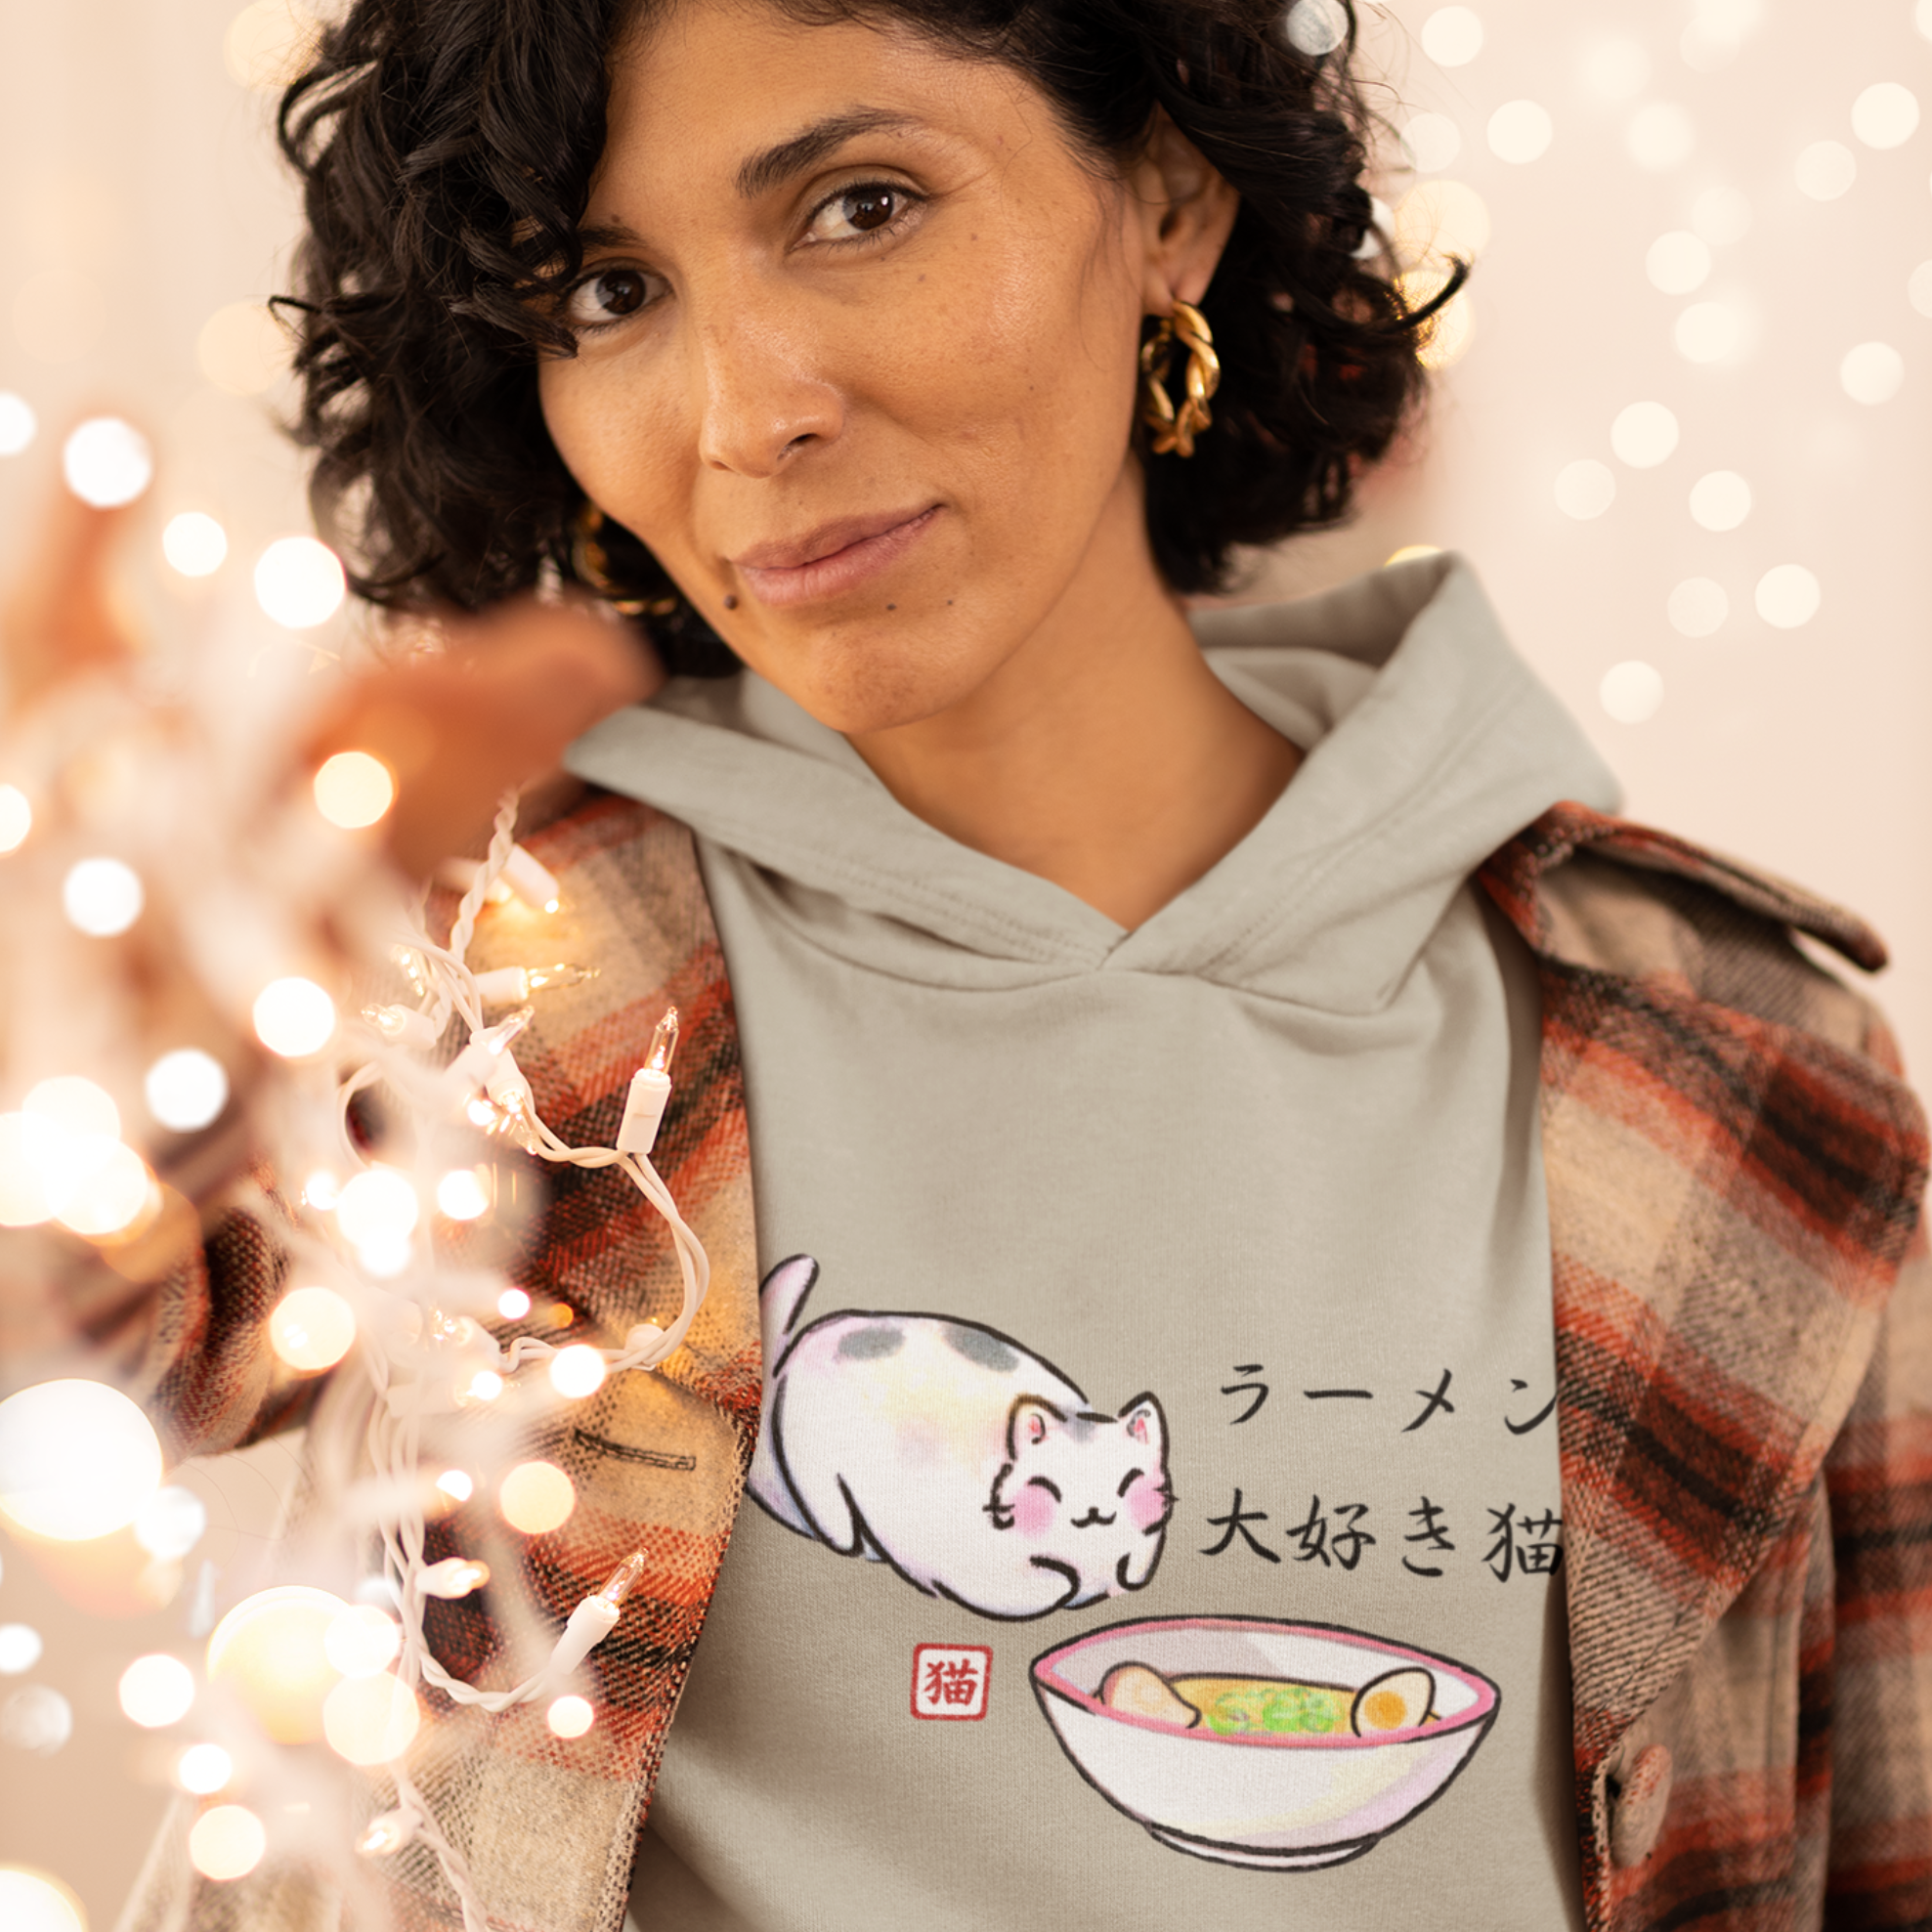 Ramen Hoodie: Meow for Noodles - Cute Cat in Ramen Bowl Design - Asian Food Hoodie - Foodie Sweatshirt - Pun Hoodie